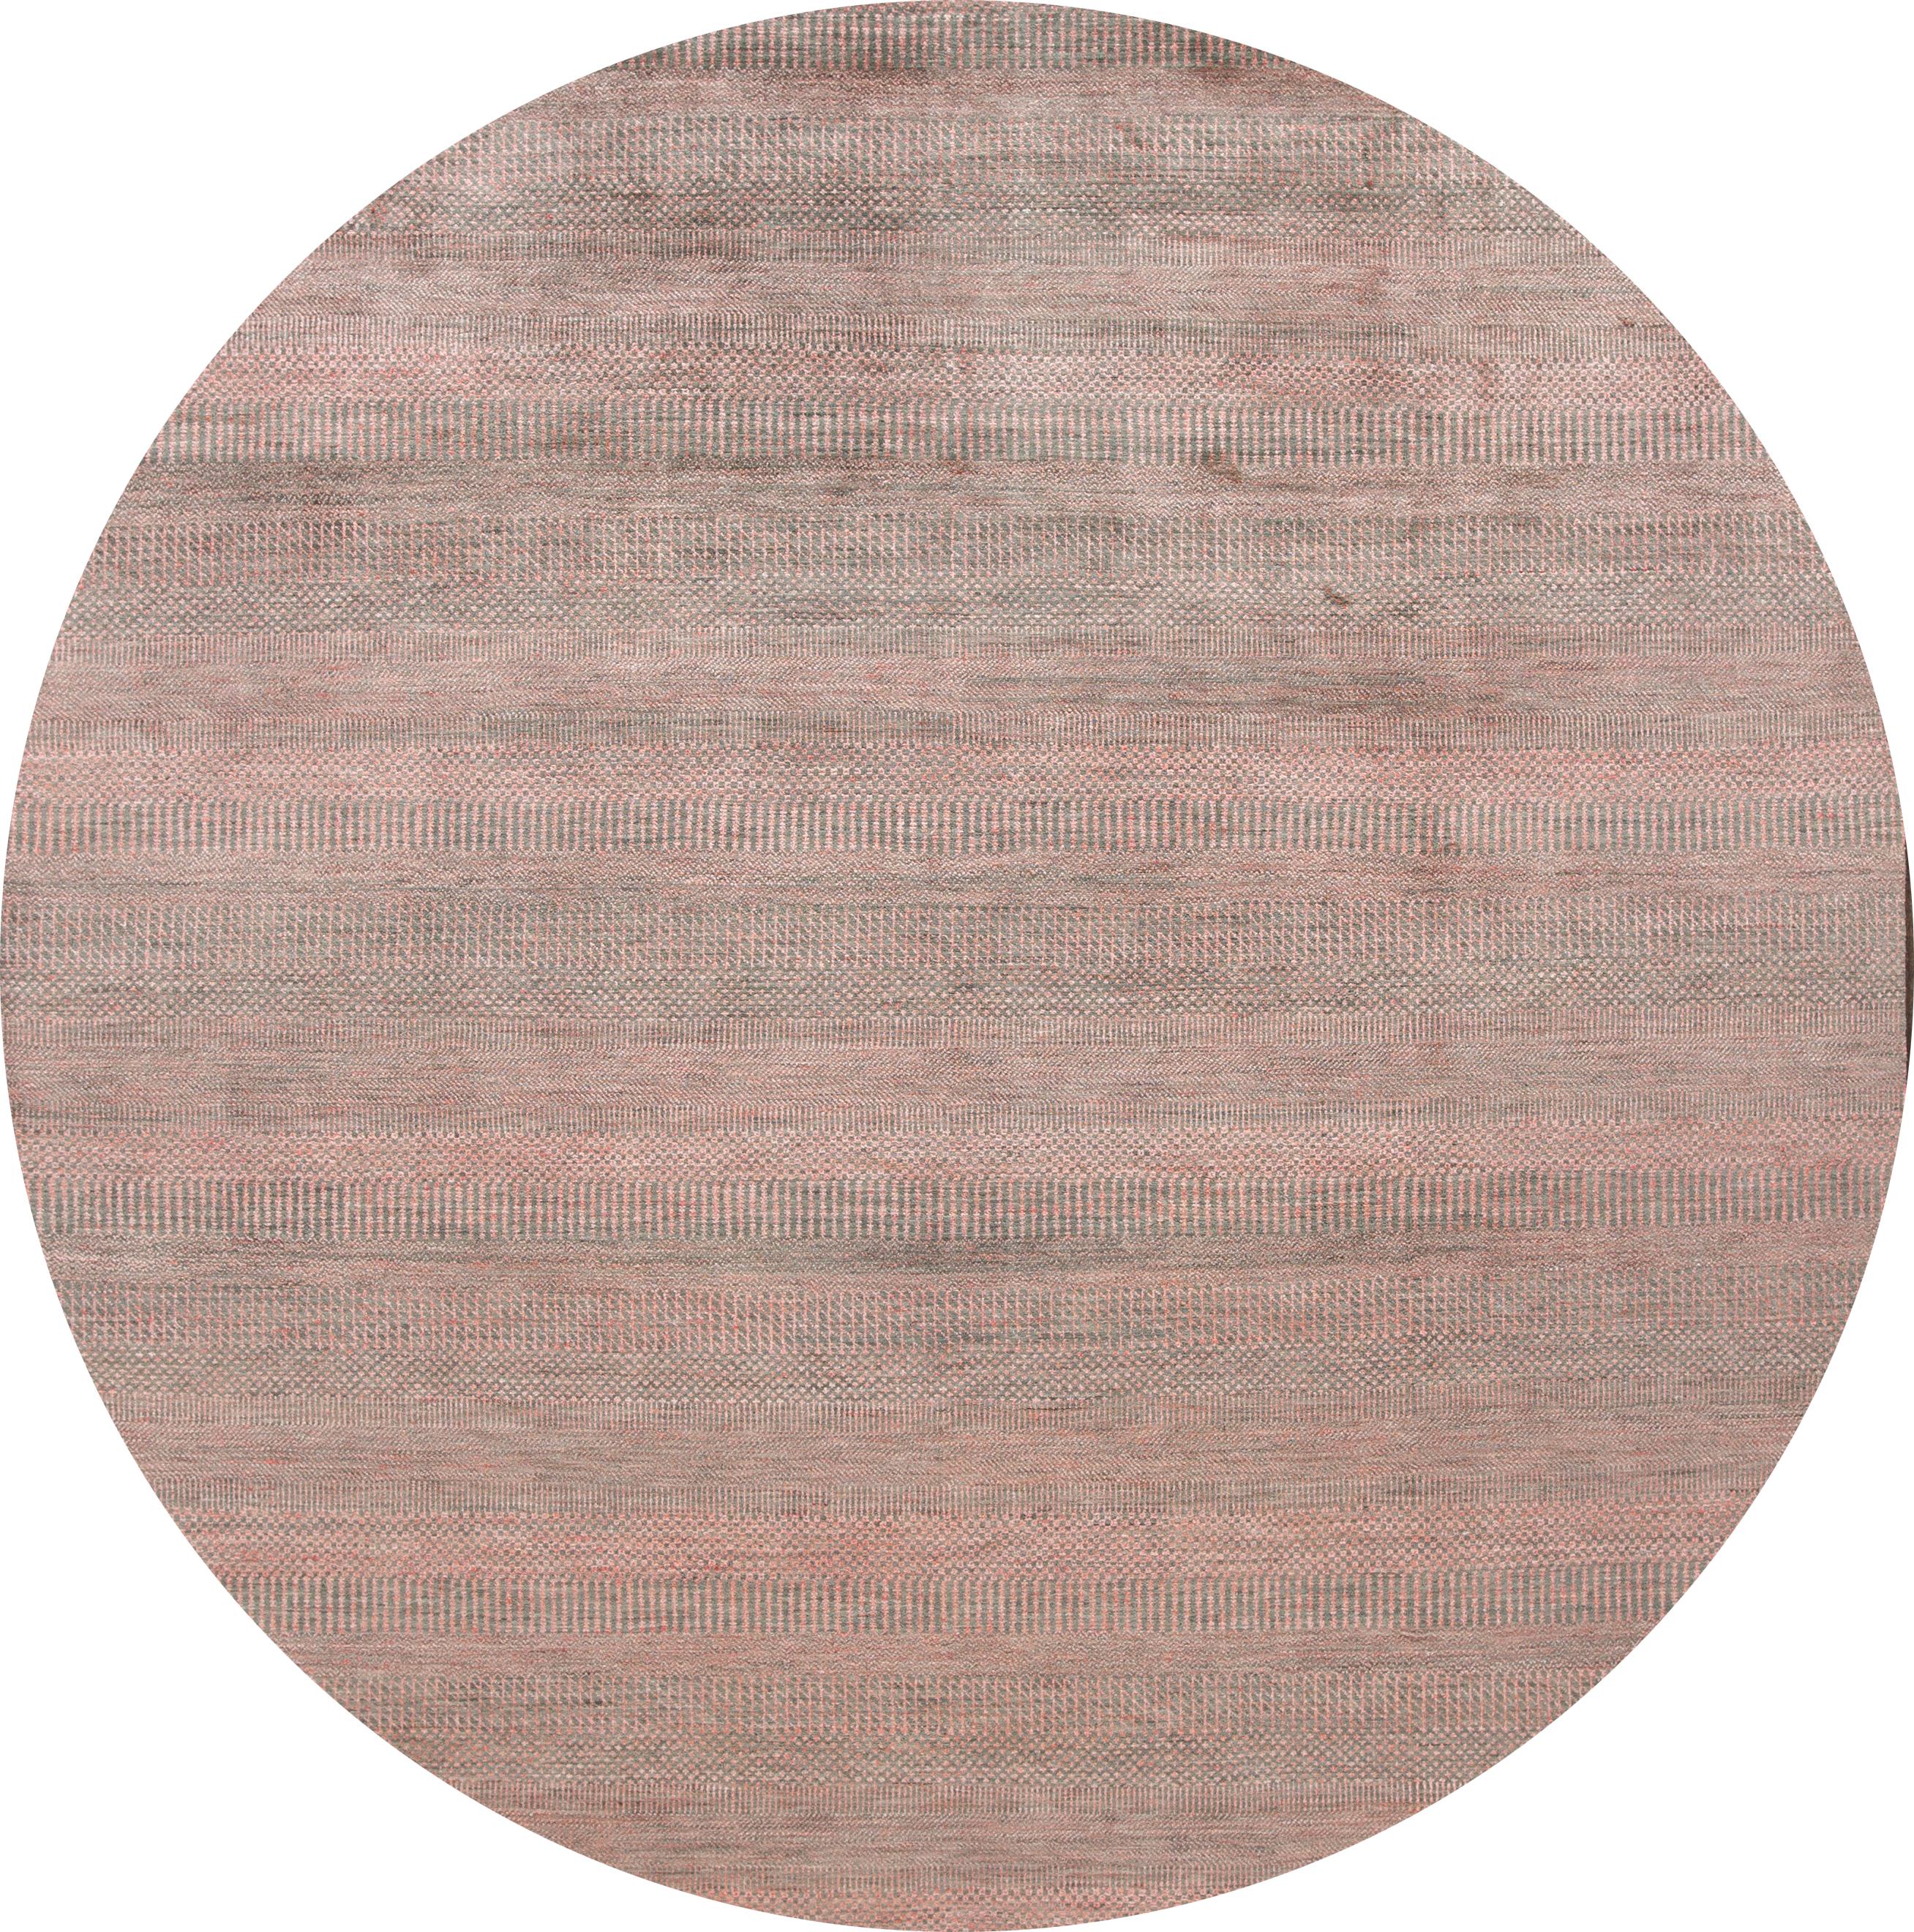 zeitgenössischer Savannah-Teppich des 21. Jahrhunderts mit einem einfarbigen grau-rosafarbenen Motiv. Dieses Stück hat feine Details, tolle Farben und ein schönes Design.

Dieser Teppich misst 8'10